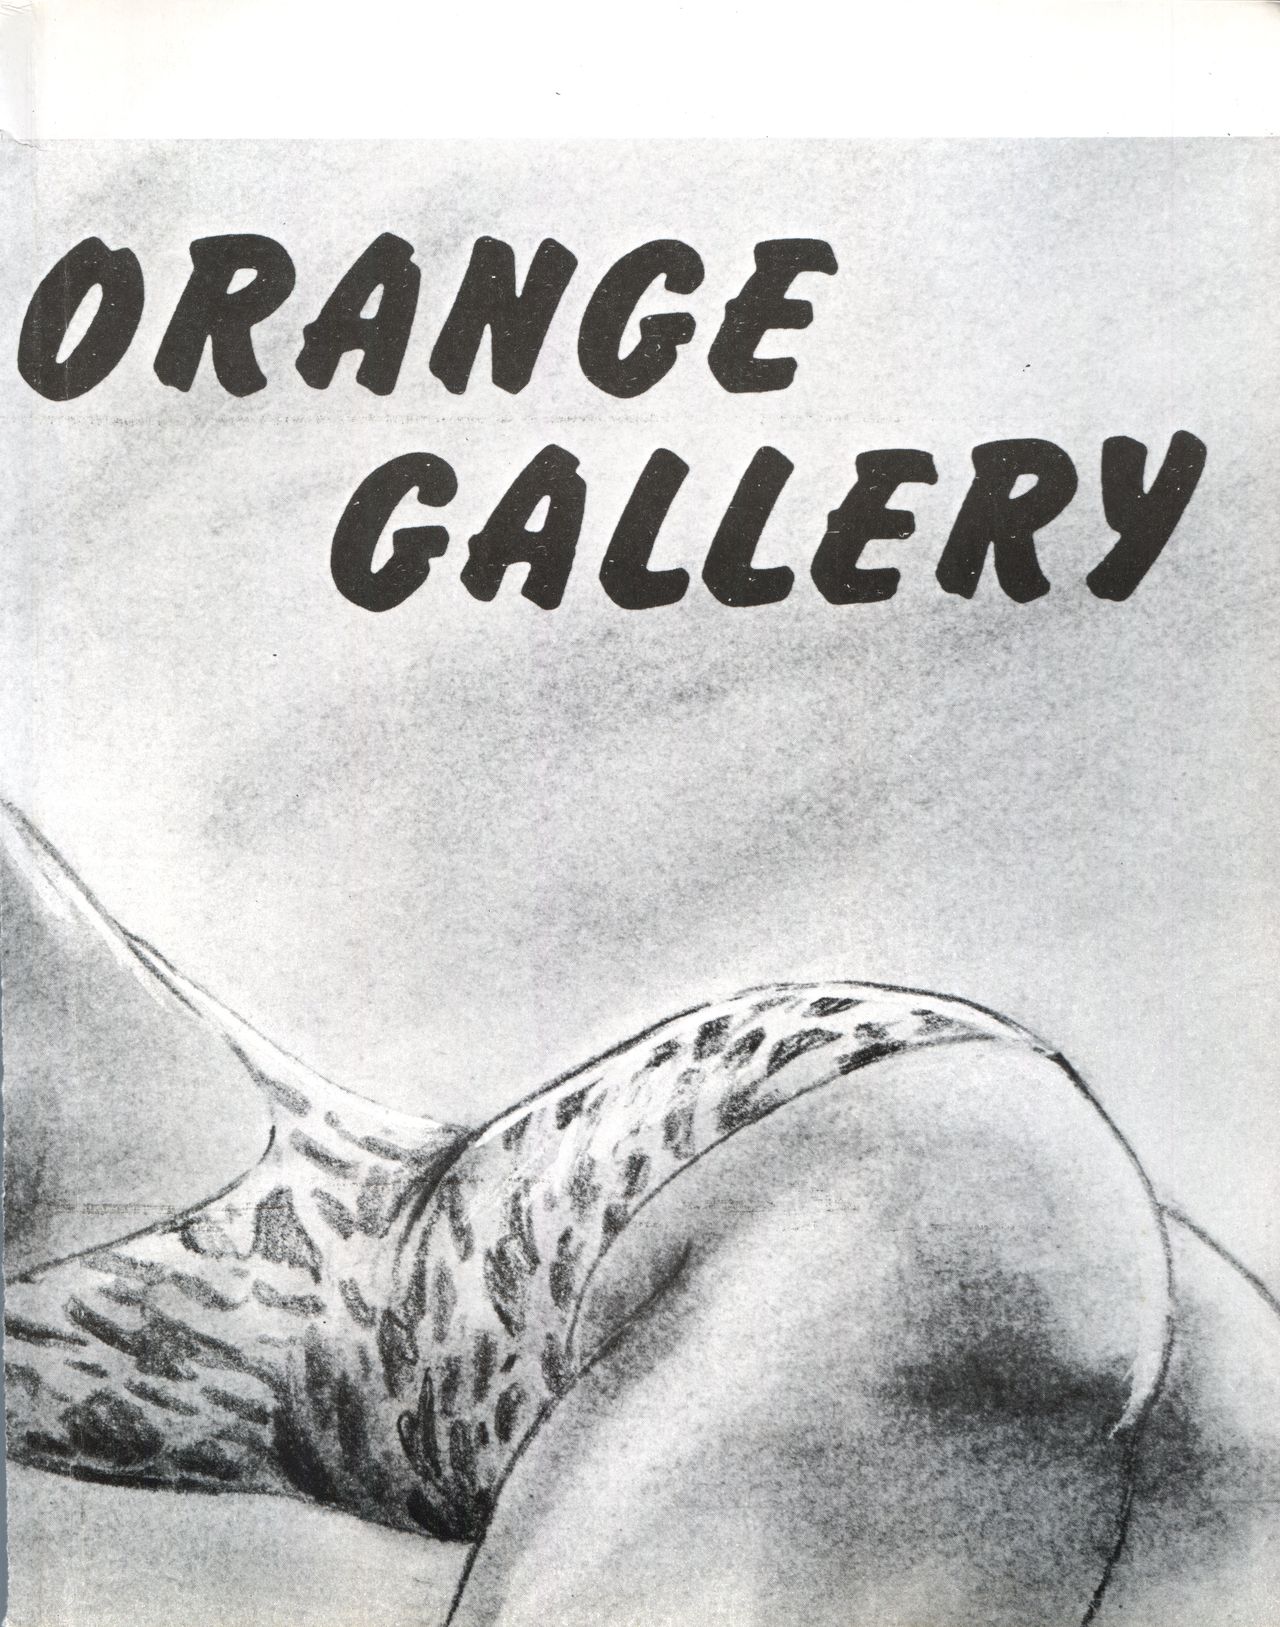 (C34) [オレンジ・ギャラリー編集部 (坂田金時)] ORENGE GALLERY SAKATA SPECIAL (きまぐれオレンジ☆ロード)